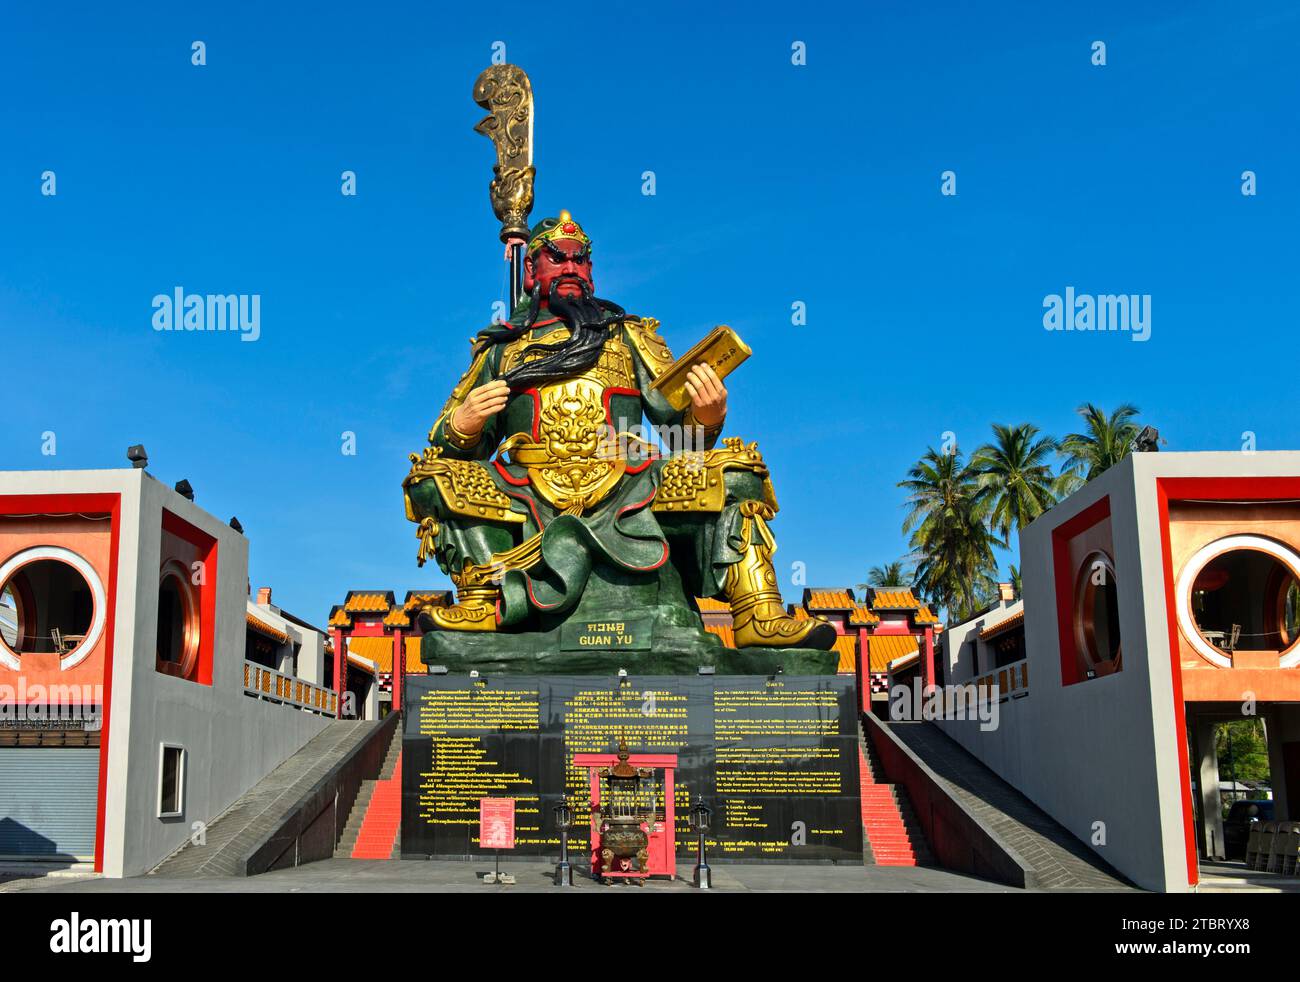 Sanctuaire Guan Yu avec la statue en bronze du général chinois Guan Yu, Koh Samui, Thaïlande Banque D'Images